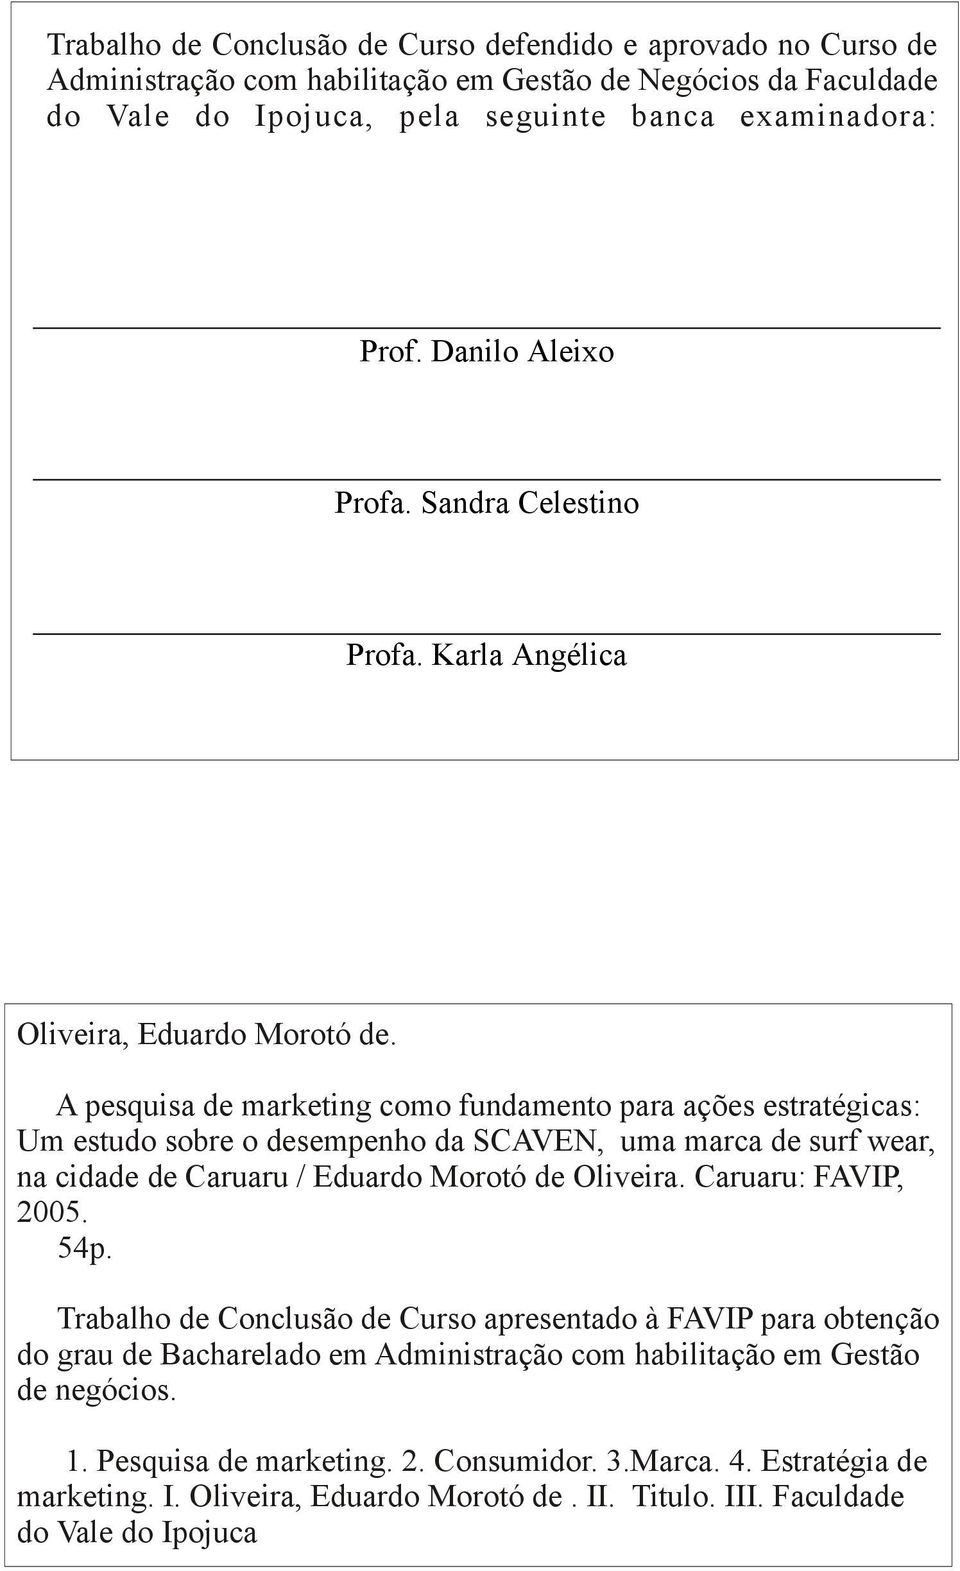 A pesquisa de marketing como fundamento para ações estratégicas: Um estudo sobre o desempenho da SCAVEN, uma marca de surf wear, na cidade de Caruaru / Eduardo Morotó de Oliveira.